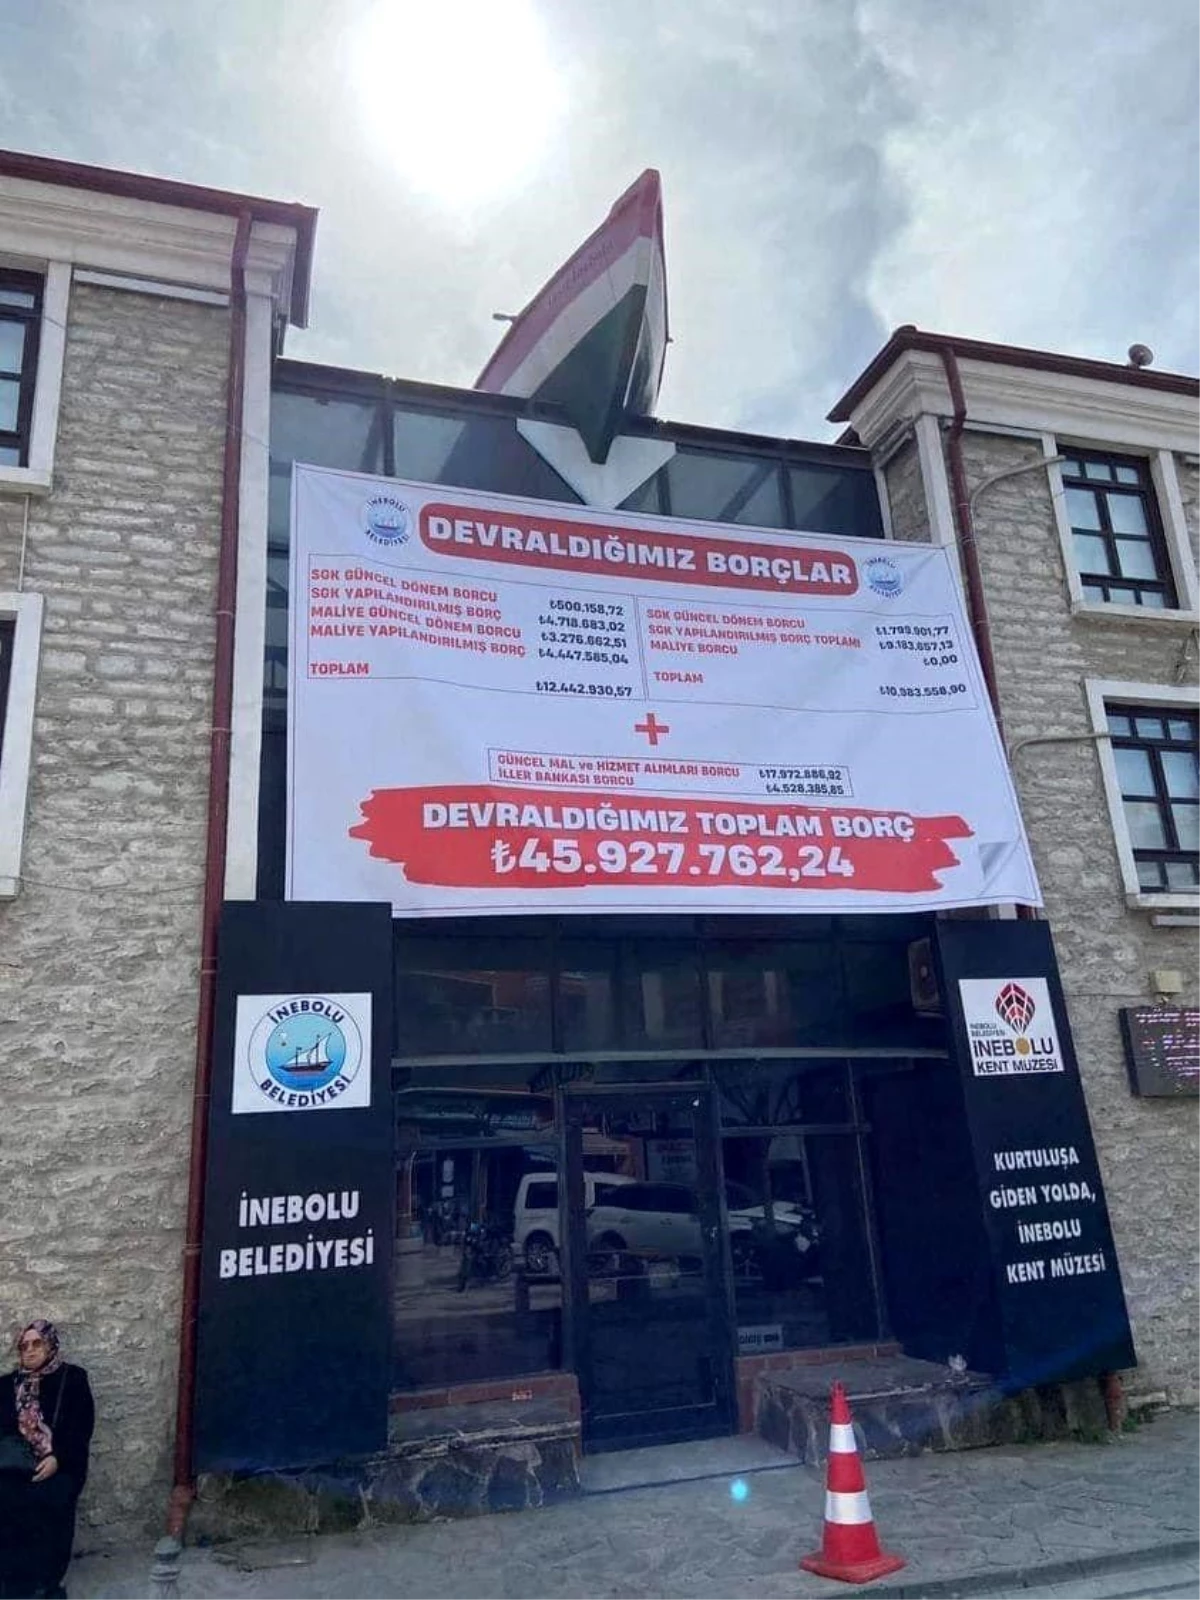 İnebolu Belediyesi, borçları gösteren afişi binaya astı